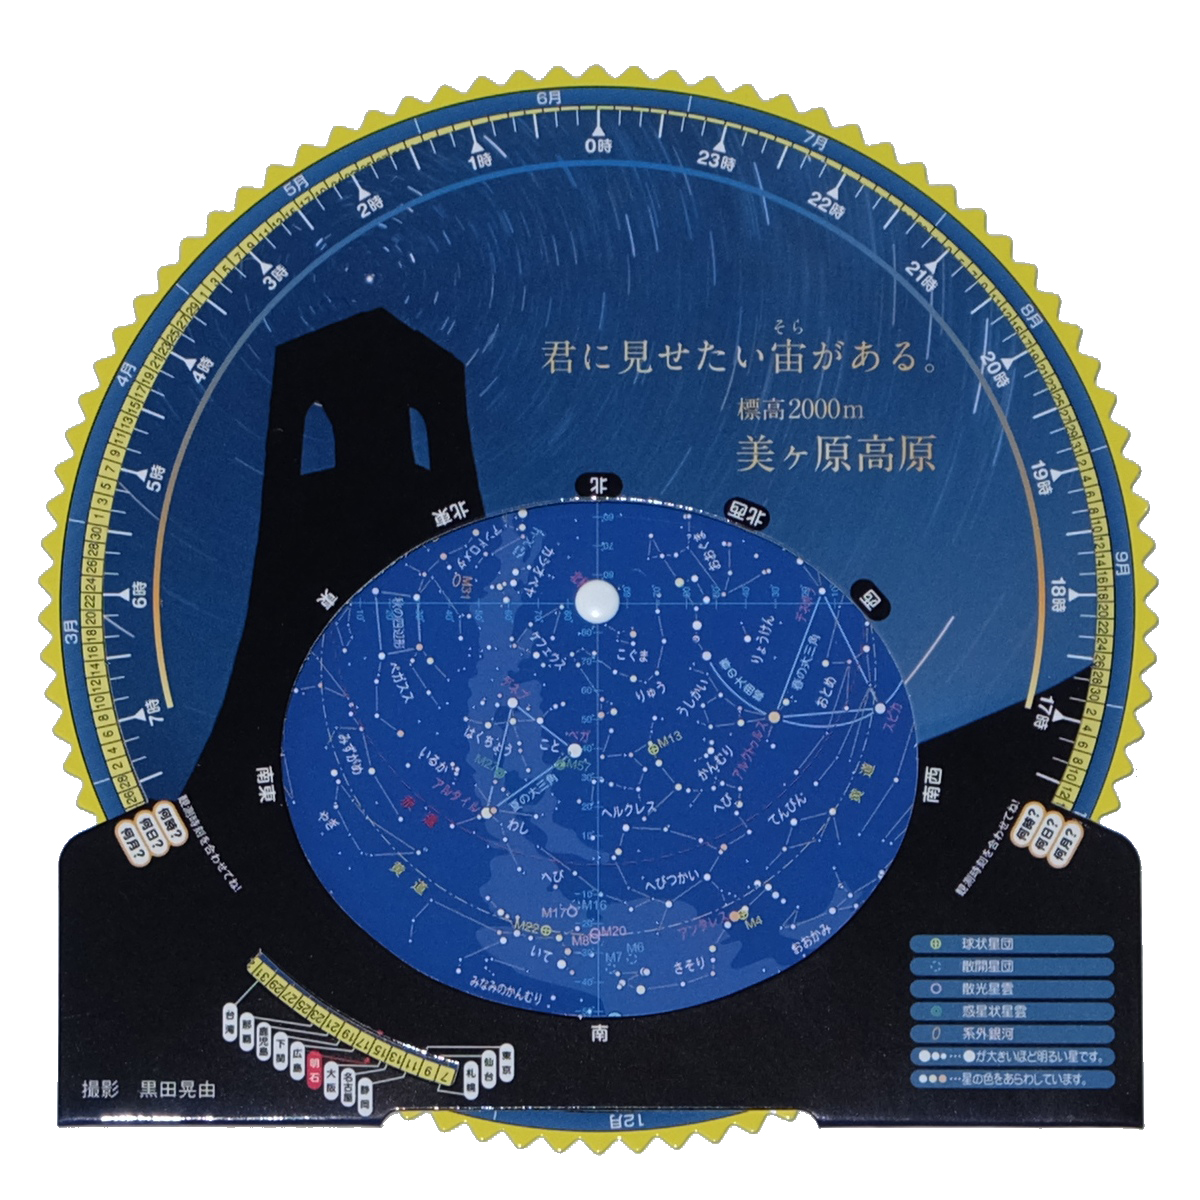 標高2,000mの“星の聖地” 美ヶ原高原オリジナルデザインの星座早見盤を製作～各施設で販売中～